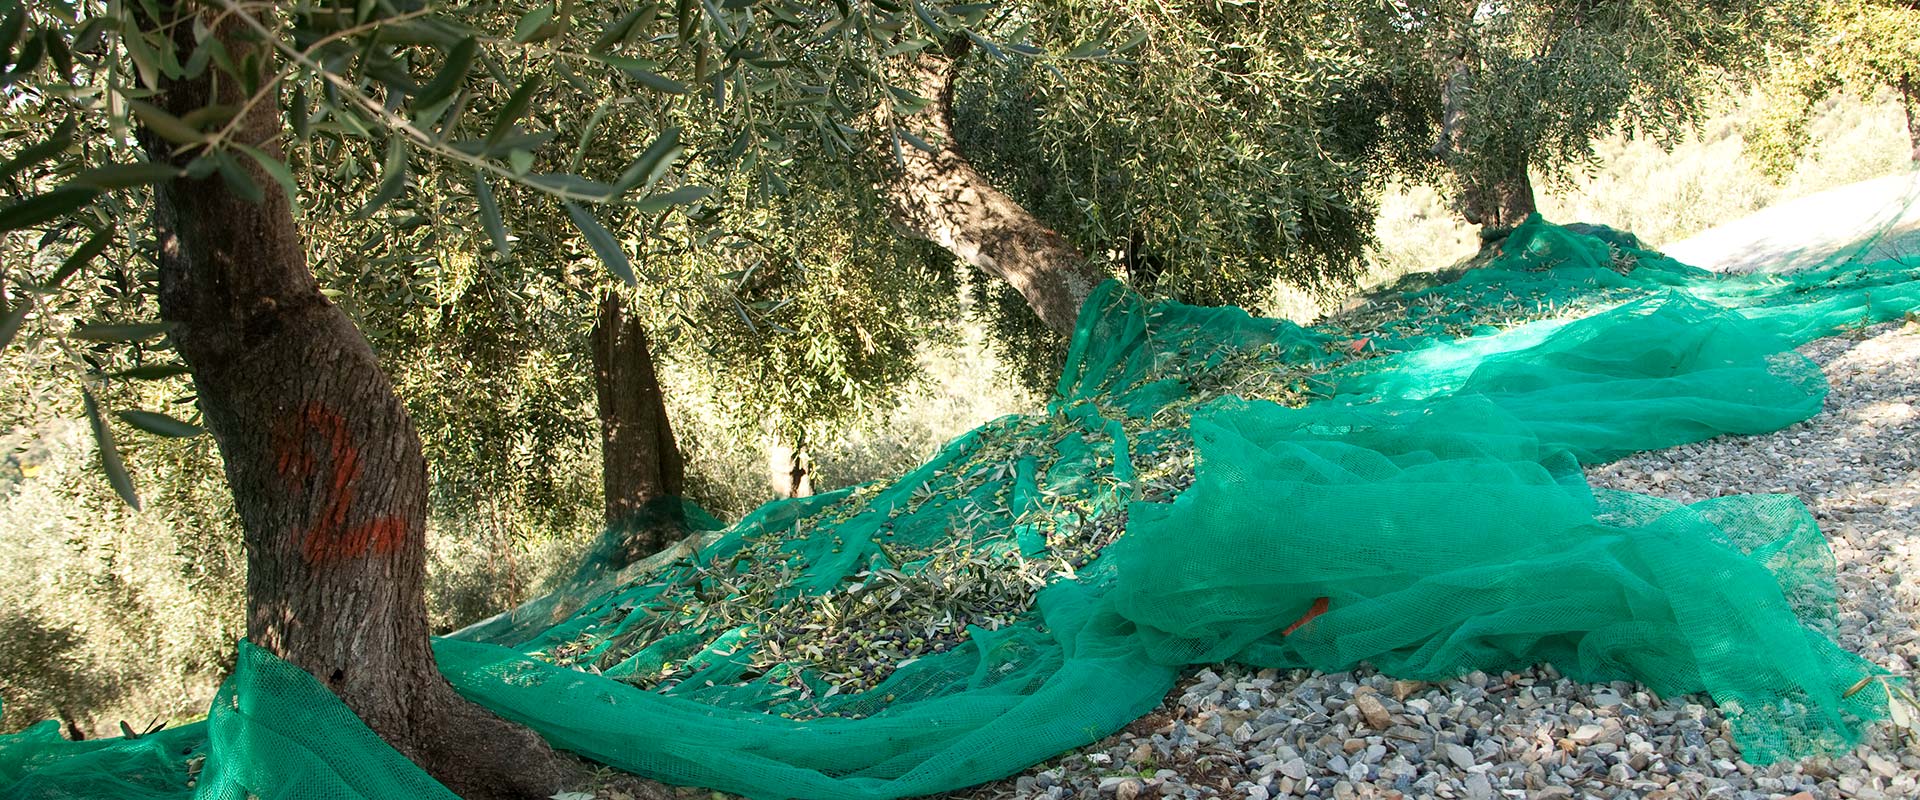 récolte des olives